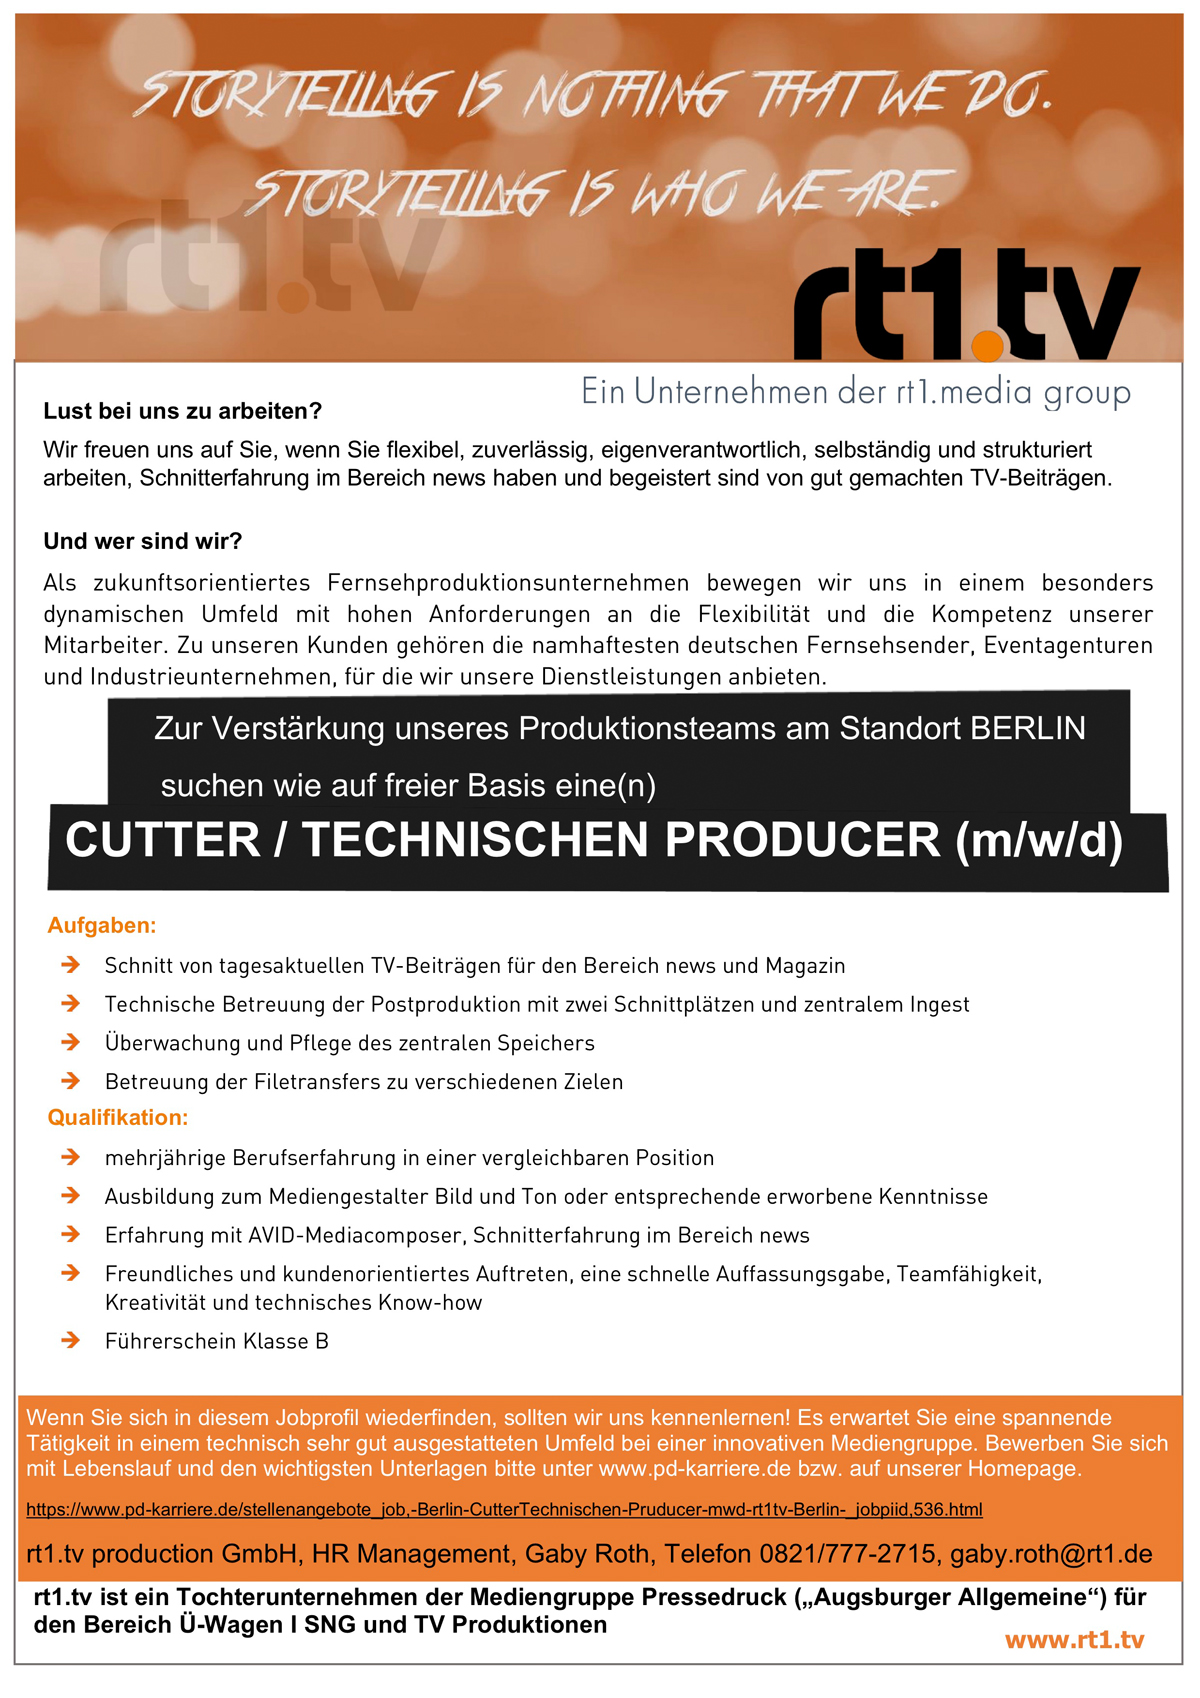 Cutter / Technischer Producer (m/w/d)